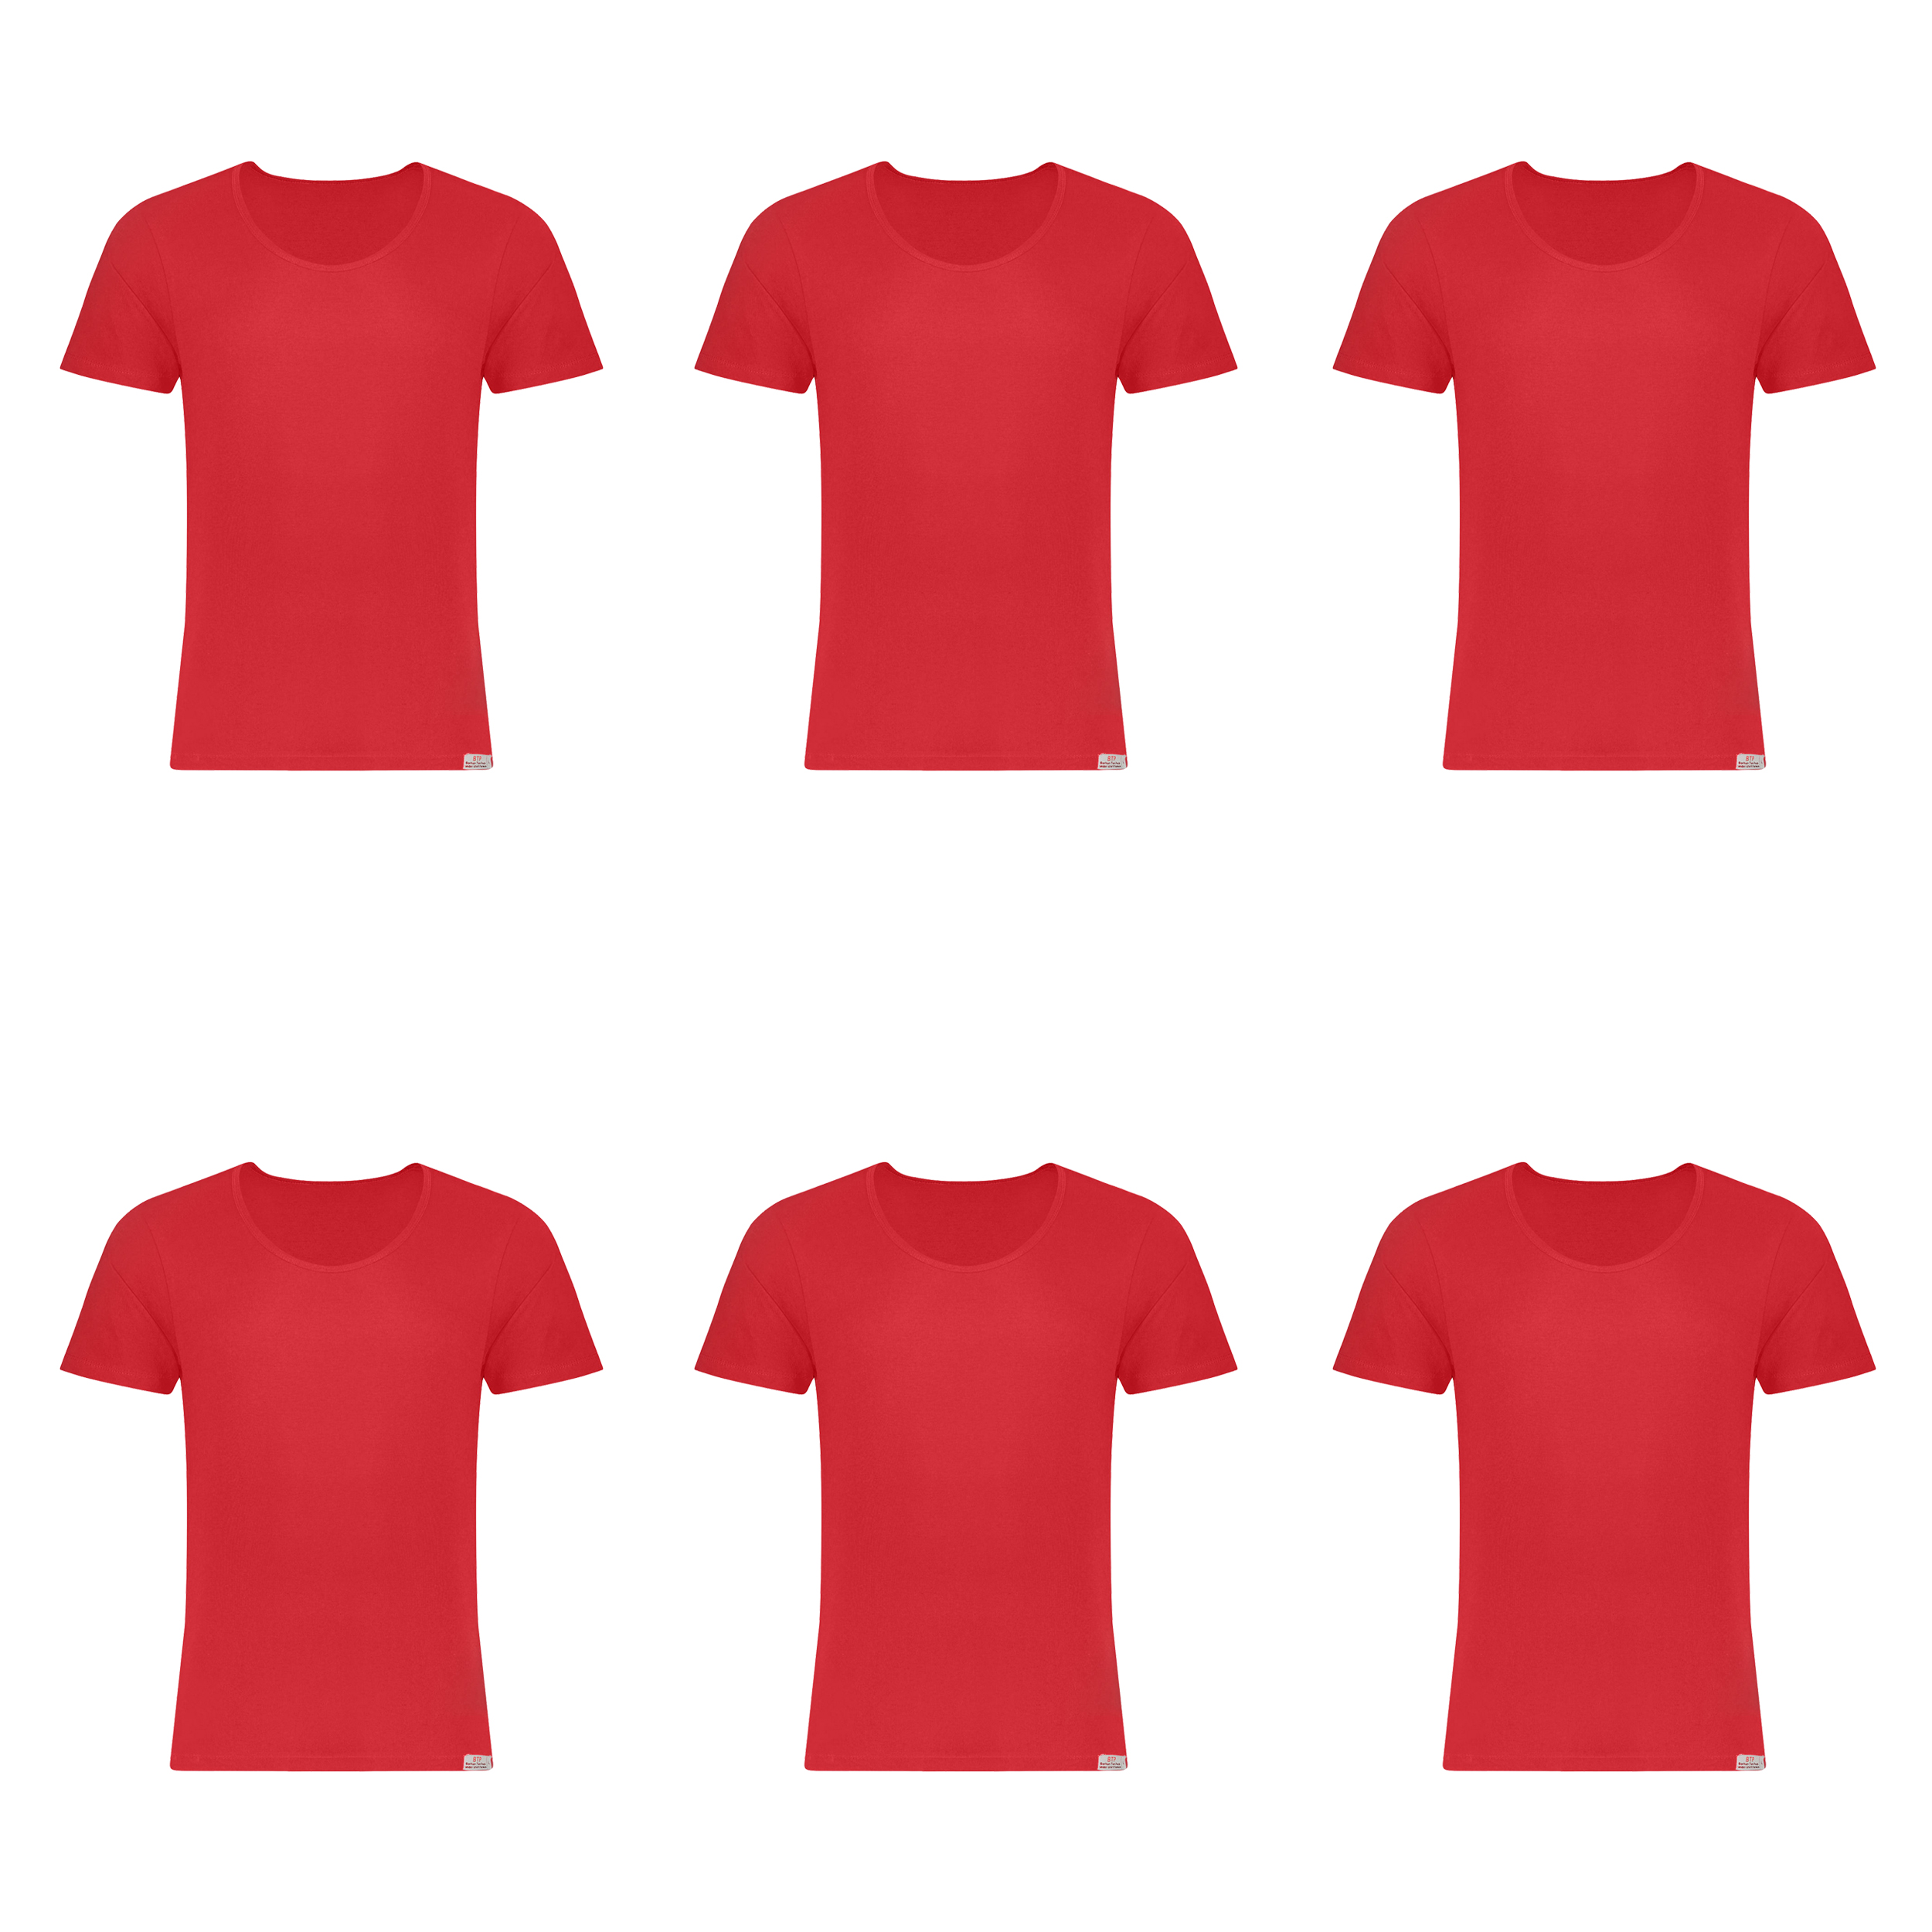 زیرپوش آستین دار مردانه برهان تن پوش مدل 2-02  رنگ قرمز بسته 6 عددی